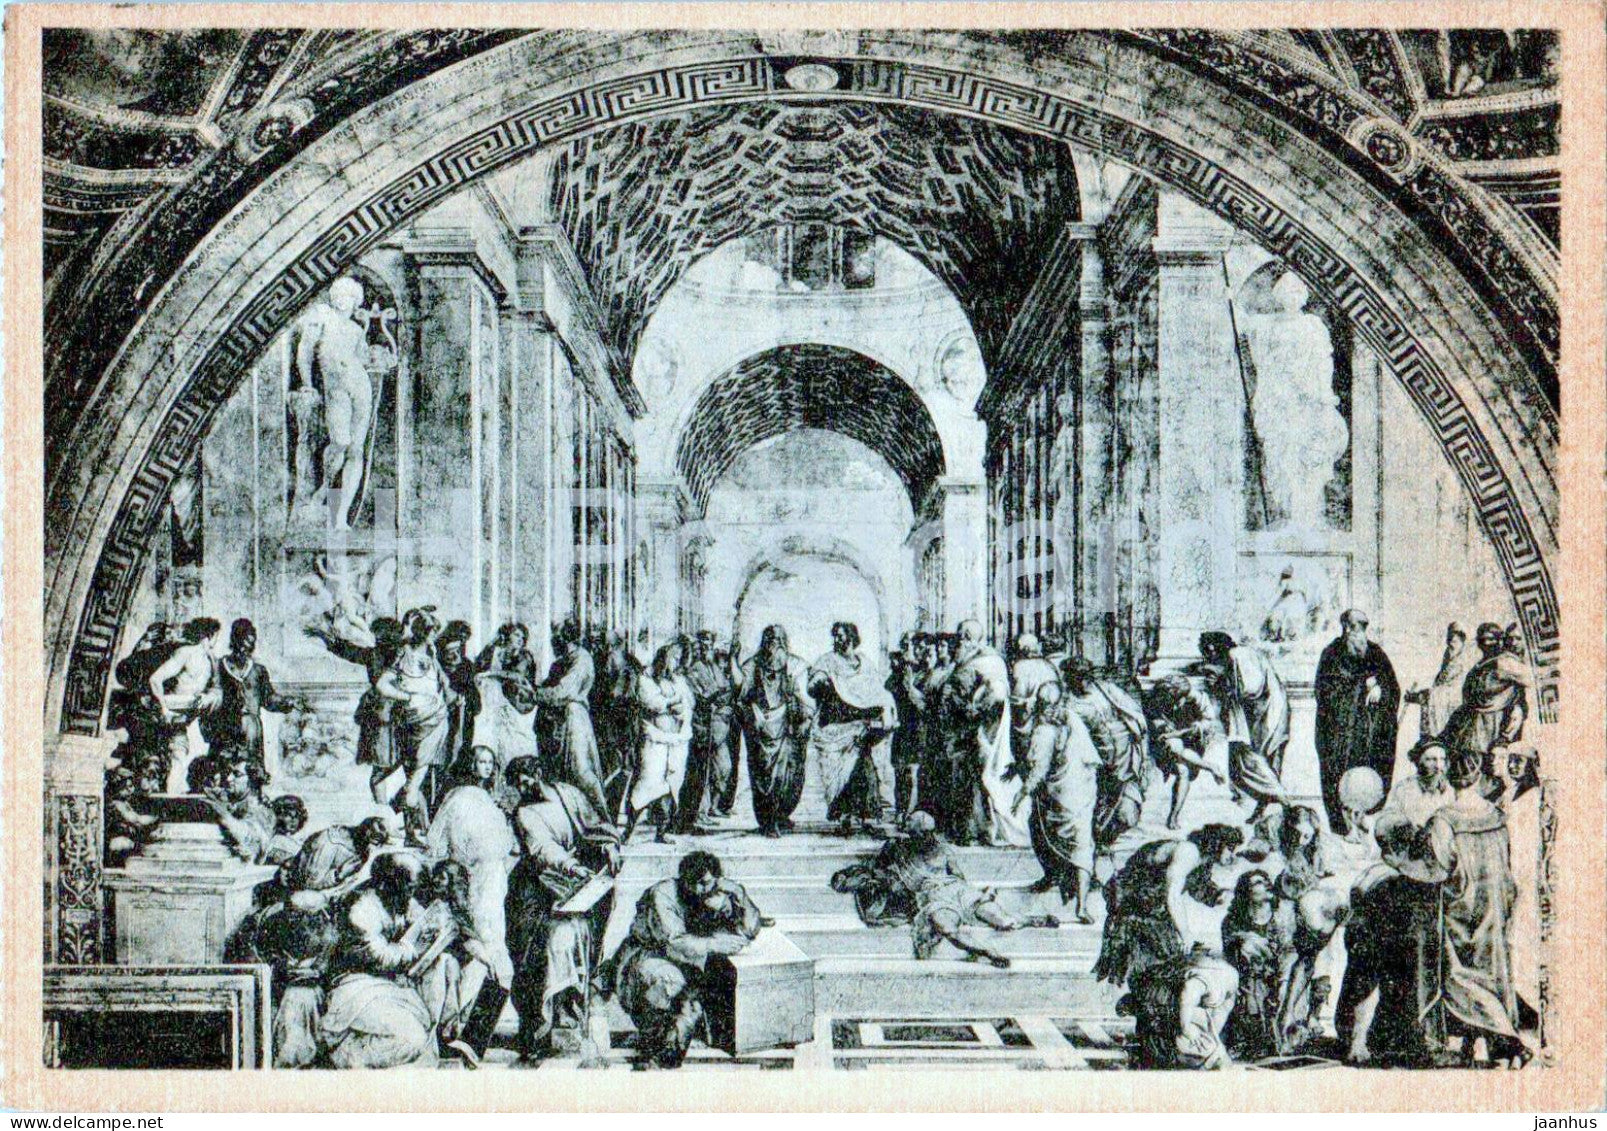 Citta del Vaticano - Stanze di Raffaello - La Scuola di Atene - Italian art - 14563-49 - old postcard - Italy - used - JH Postcards